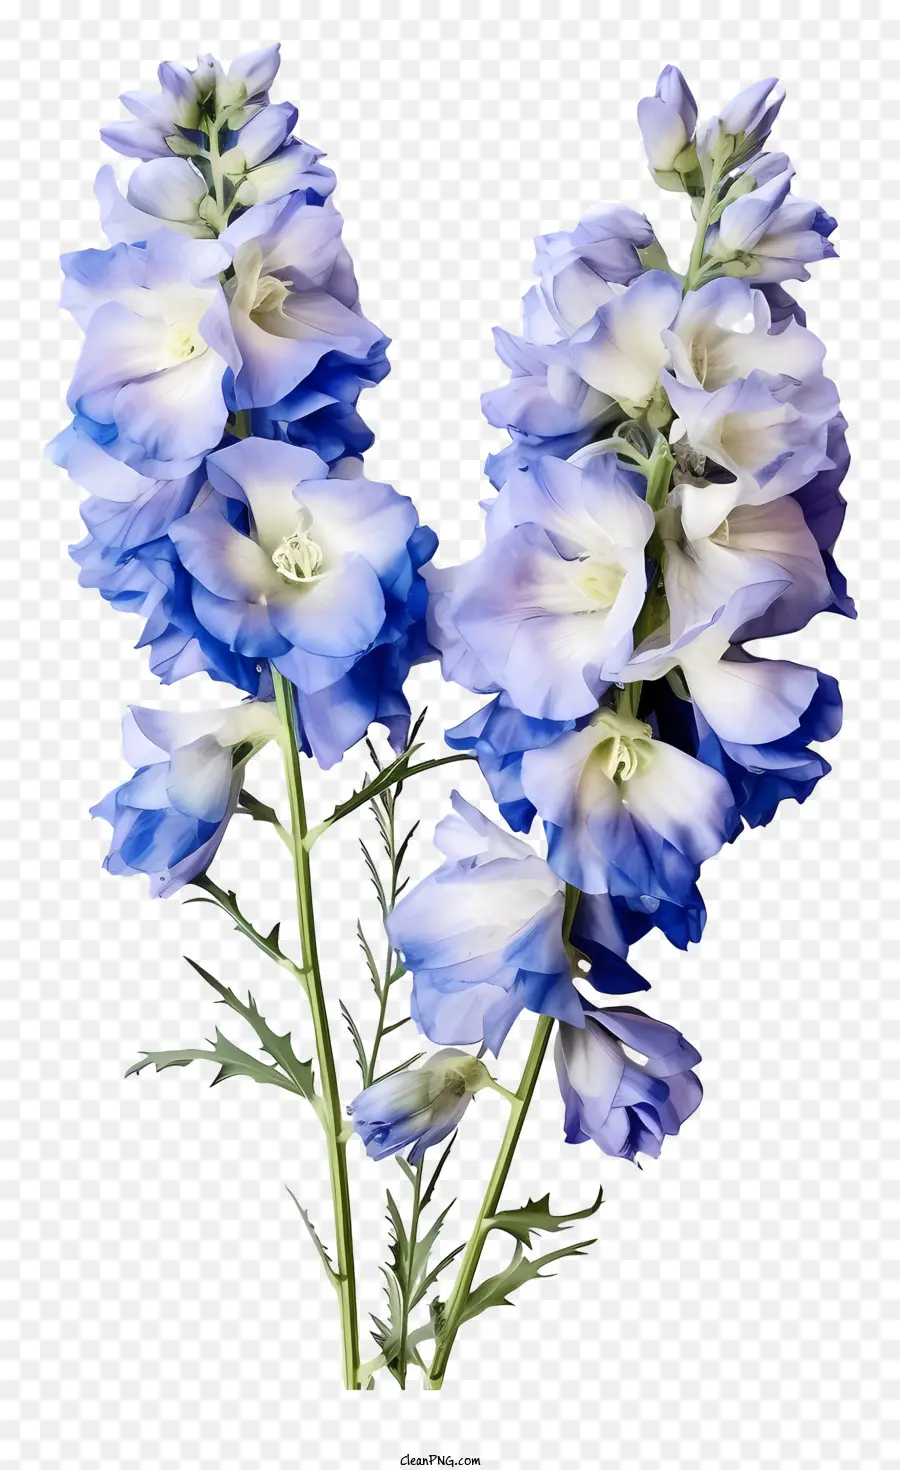 Blaue Blume - Blaue und weiße Blume umgeben von grünen Blättern